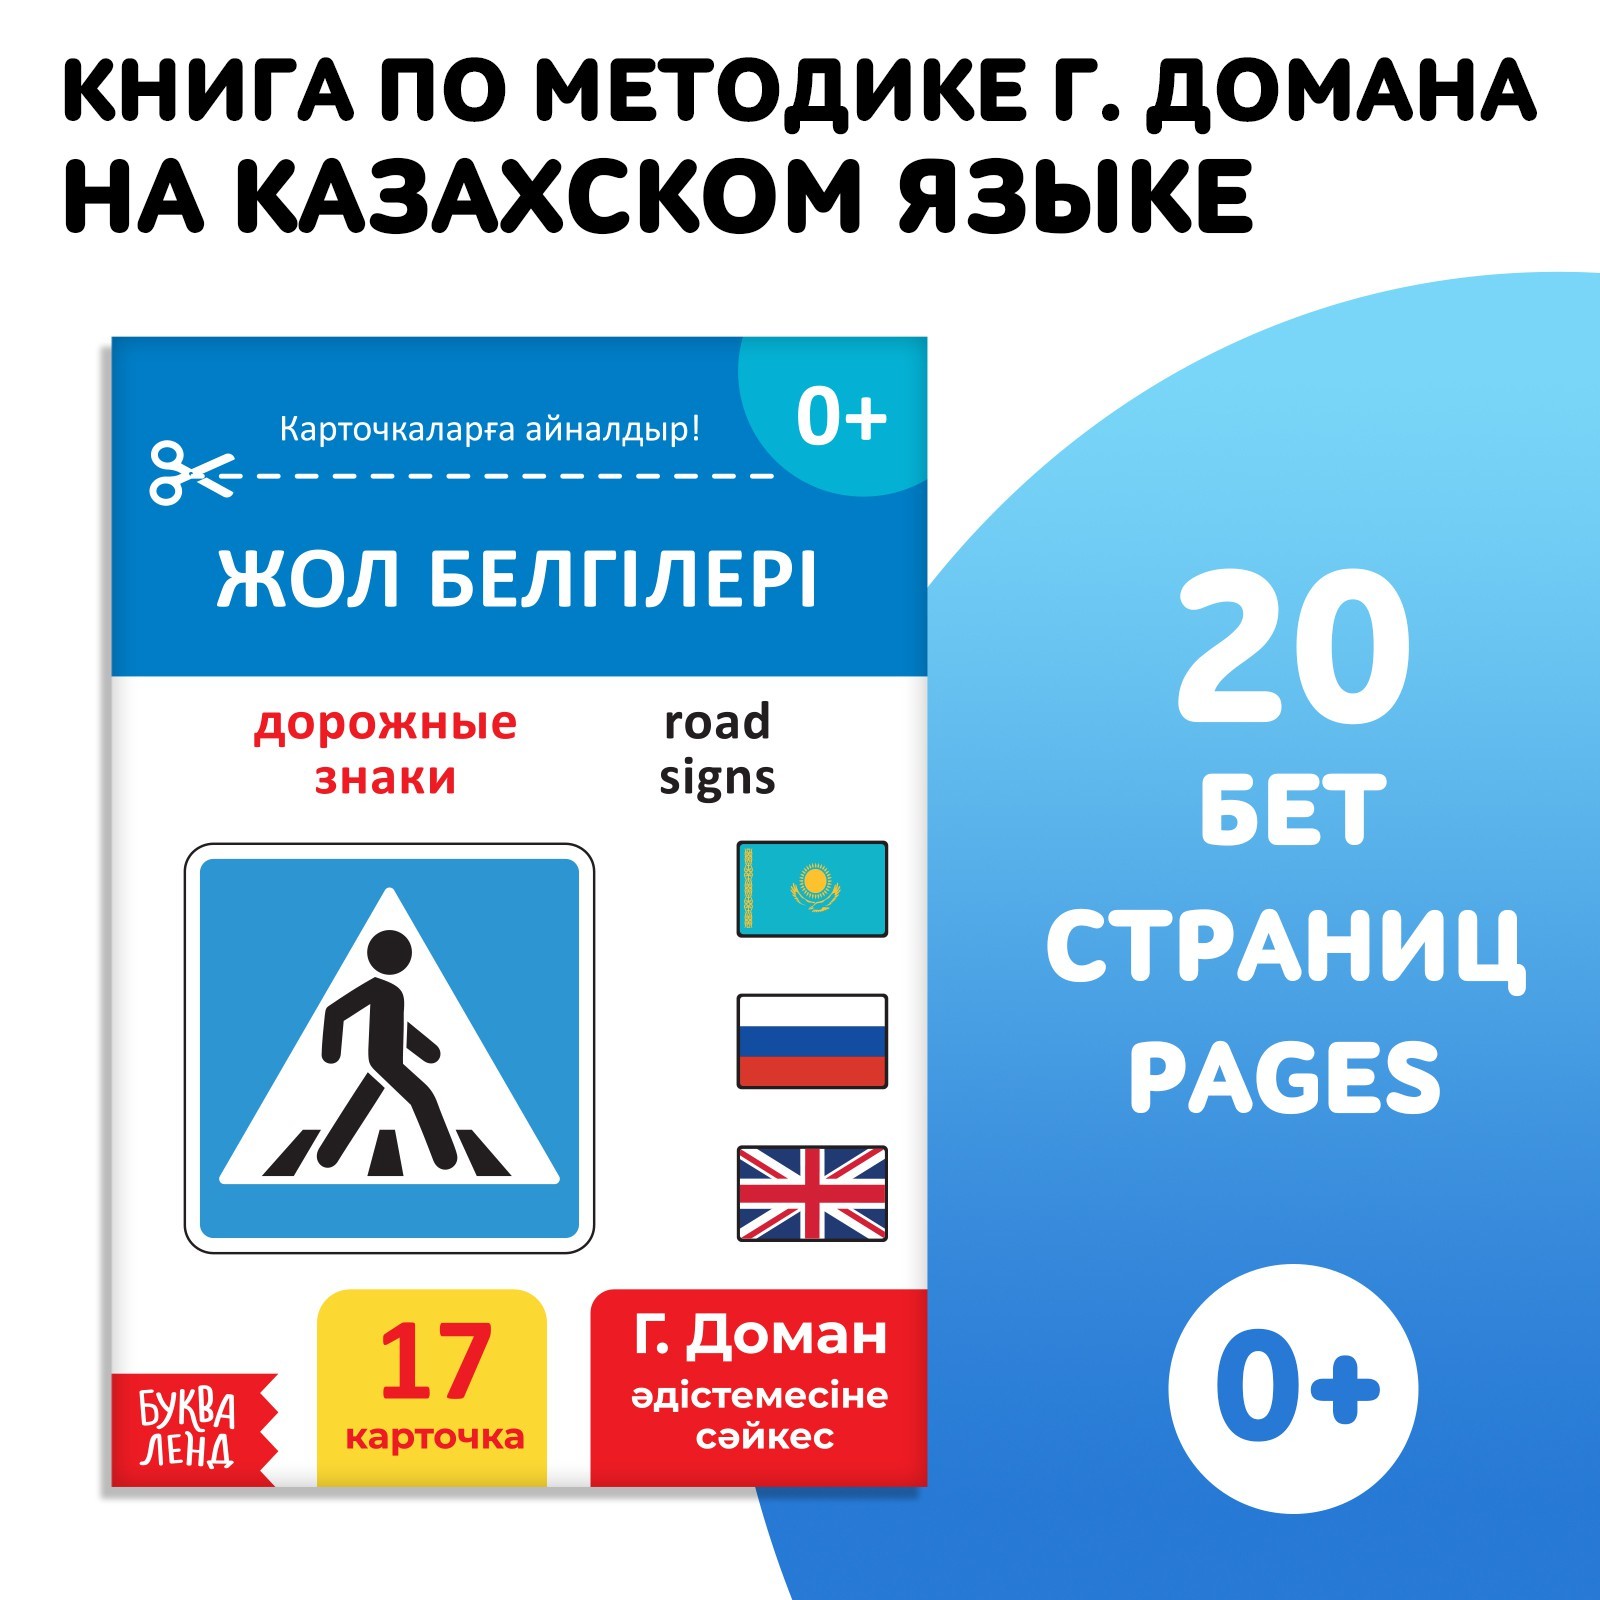 Книга по методике Г. Домана Дорожные знаки, на казахском языке 9828792